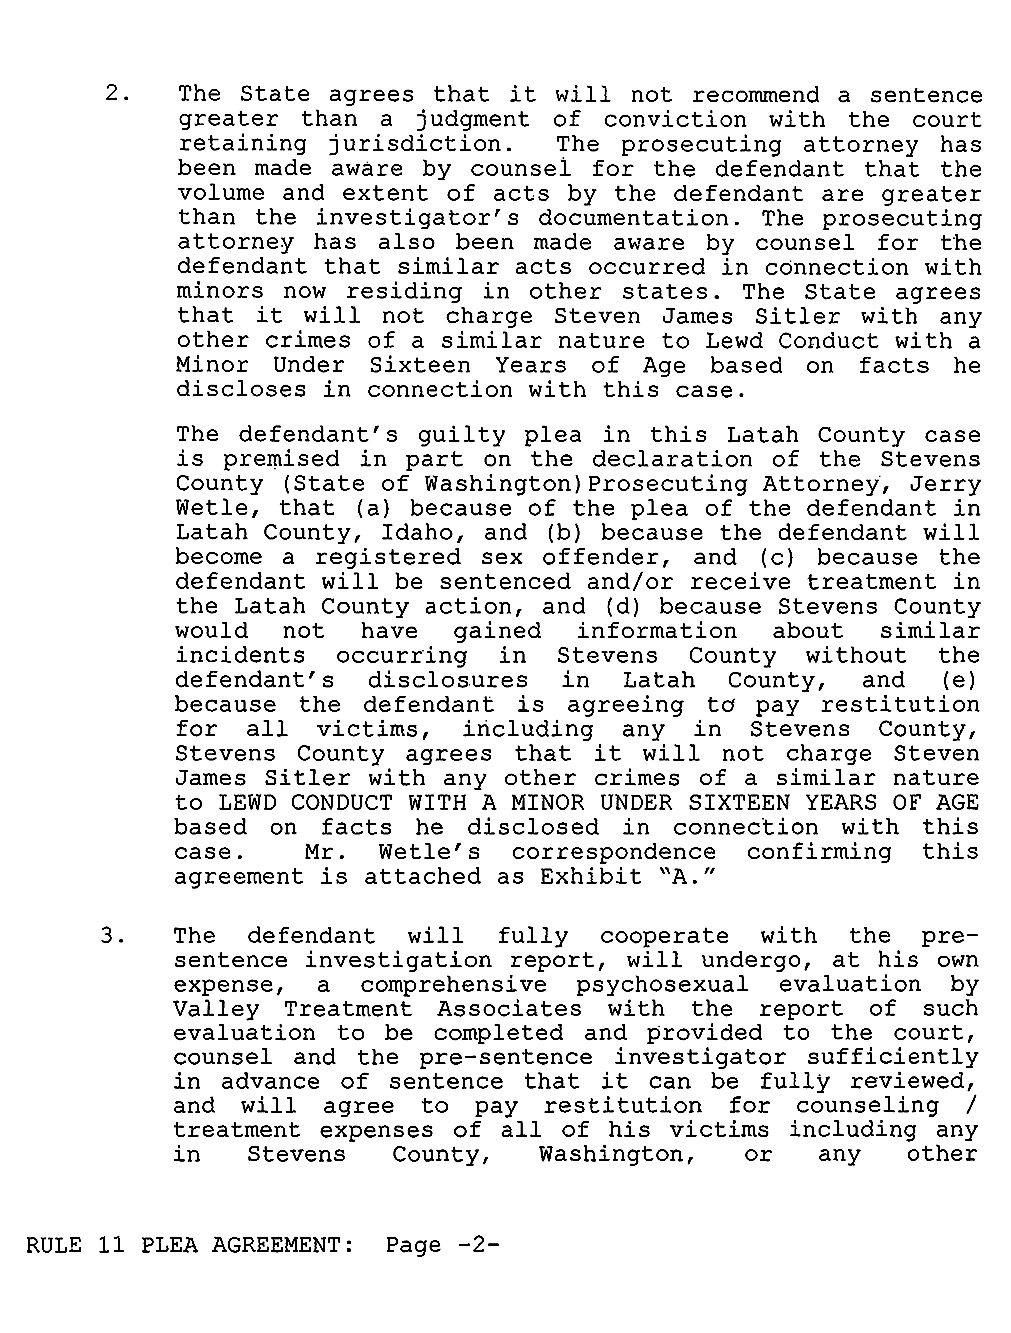 Steven Sitler: Rule 11 Plea Agreement, page 2